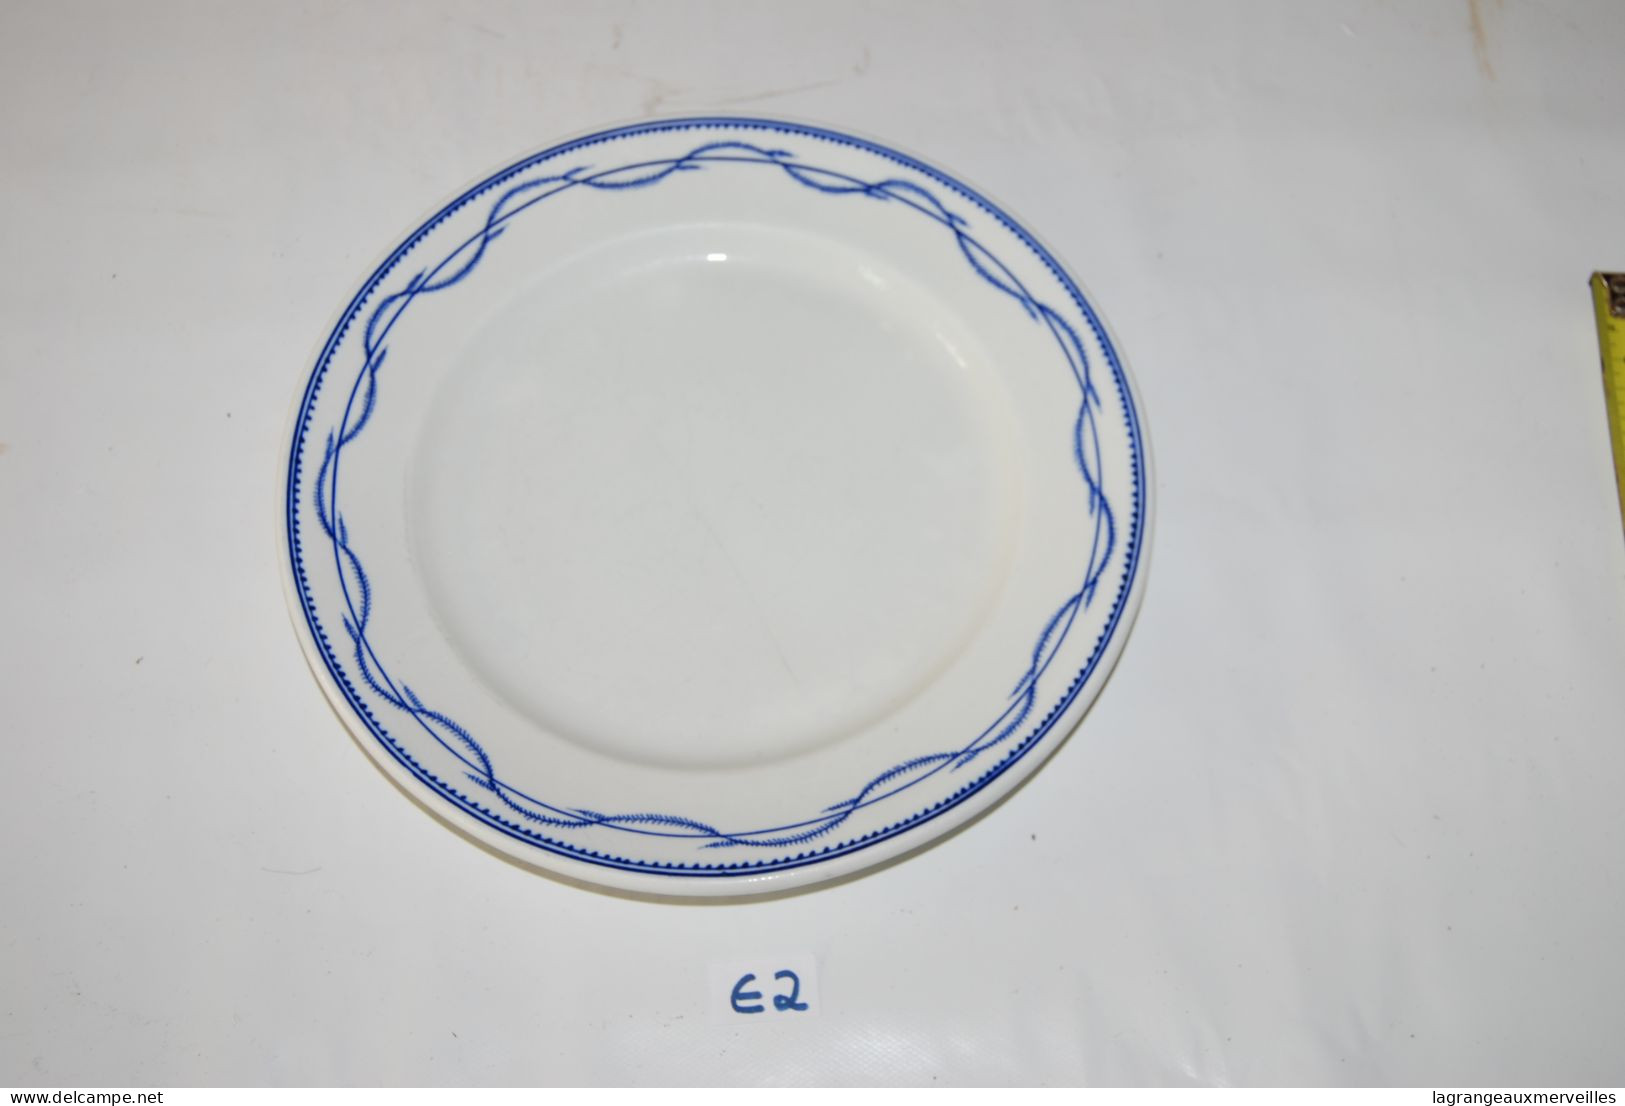 E2 Assiette En Porcelaine De Tournai - Décor Chenille, Double Filet Avec Dent De Loup - Décor Peu Courant - Rare Tiles 4 - Tournai (BEL)